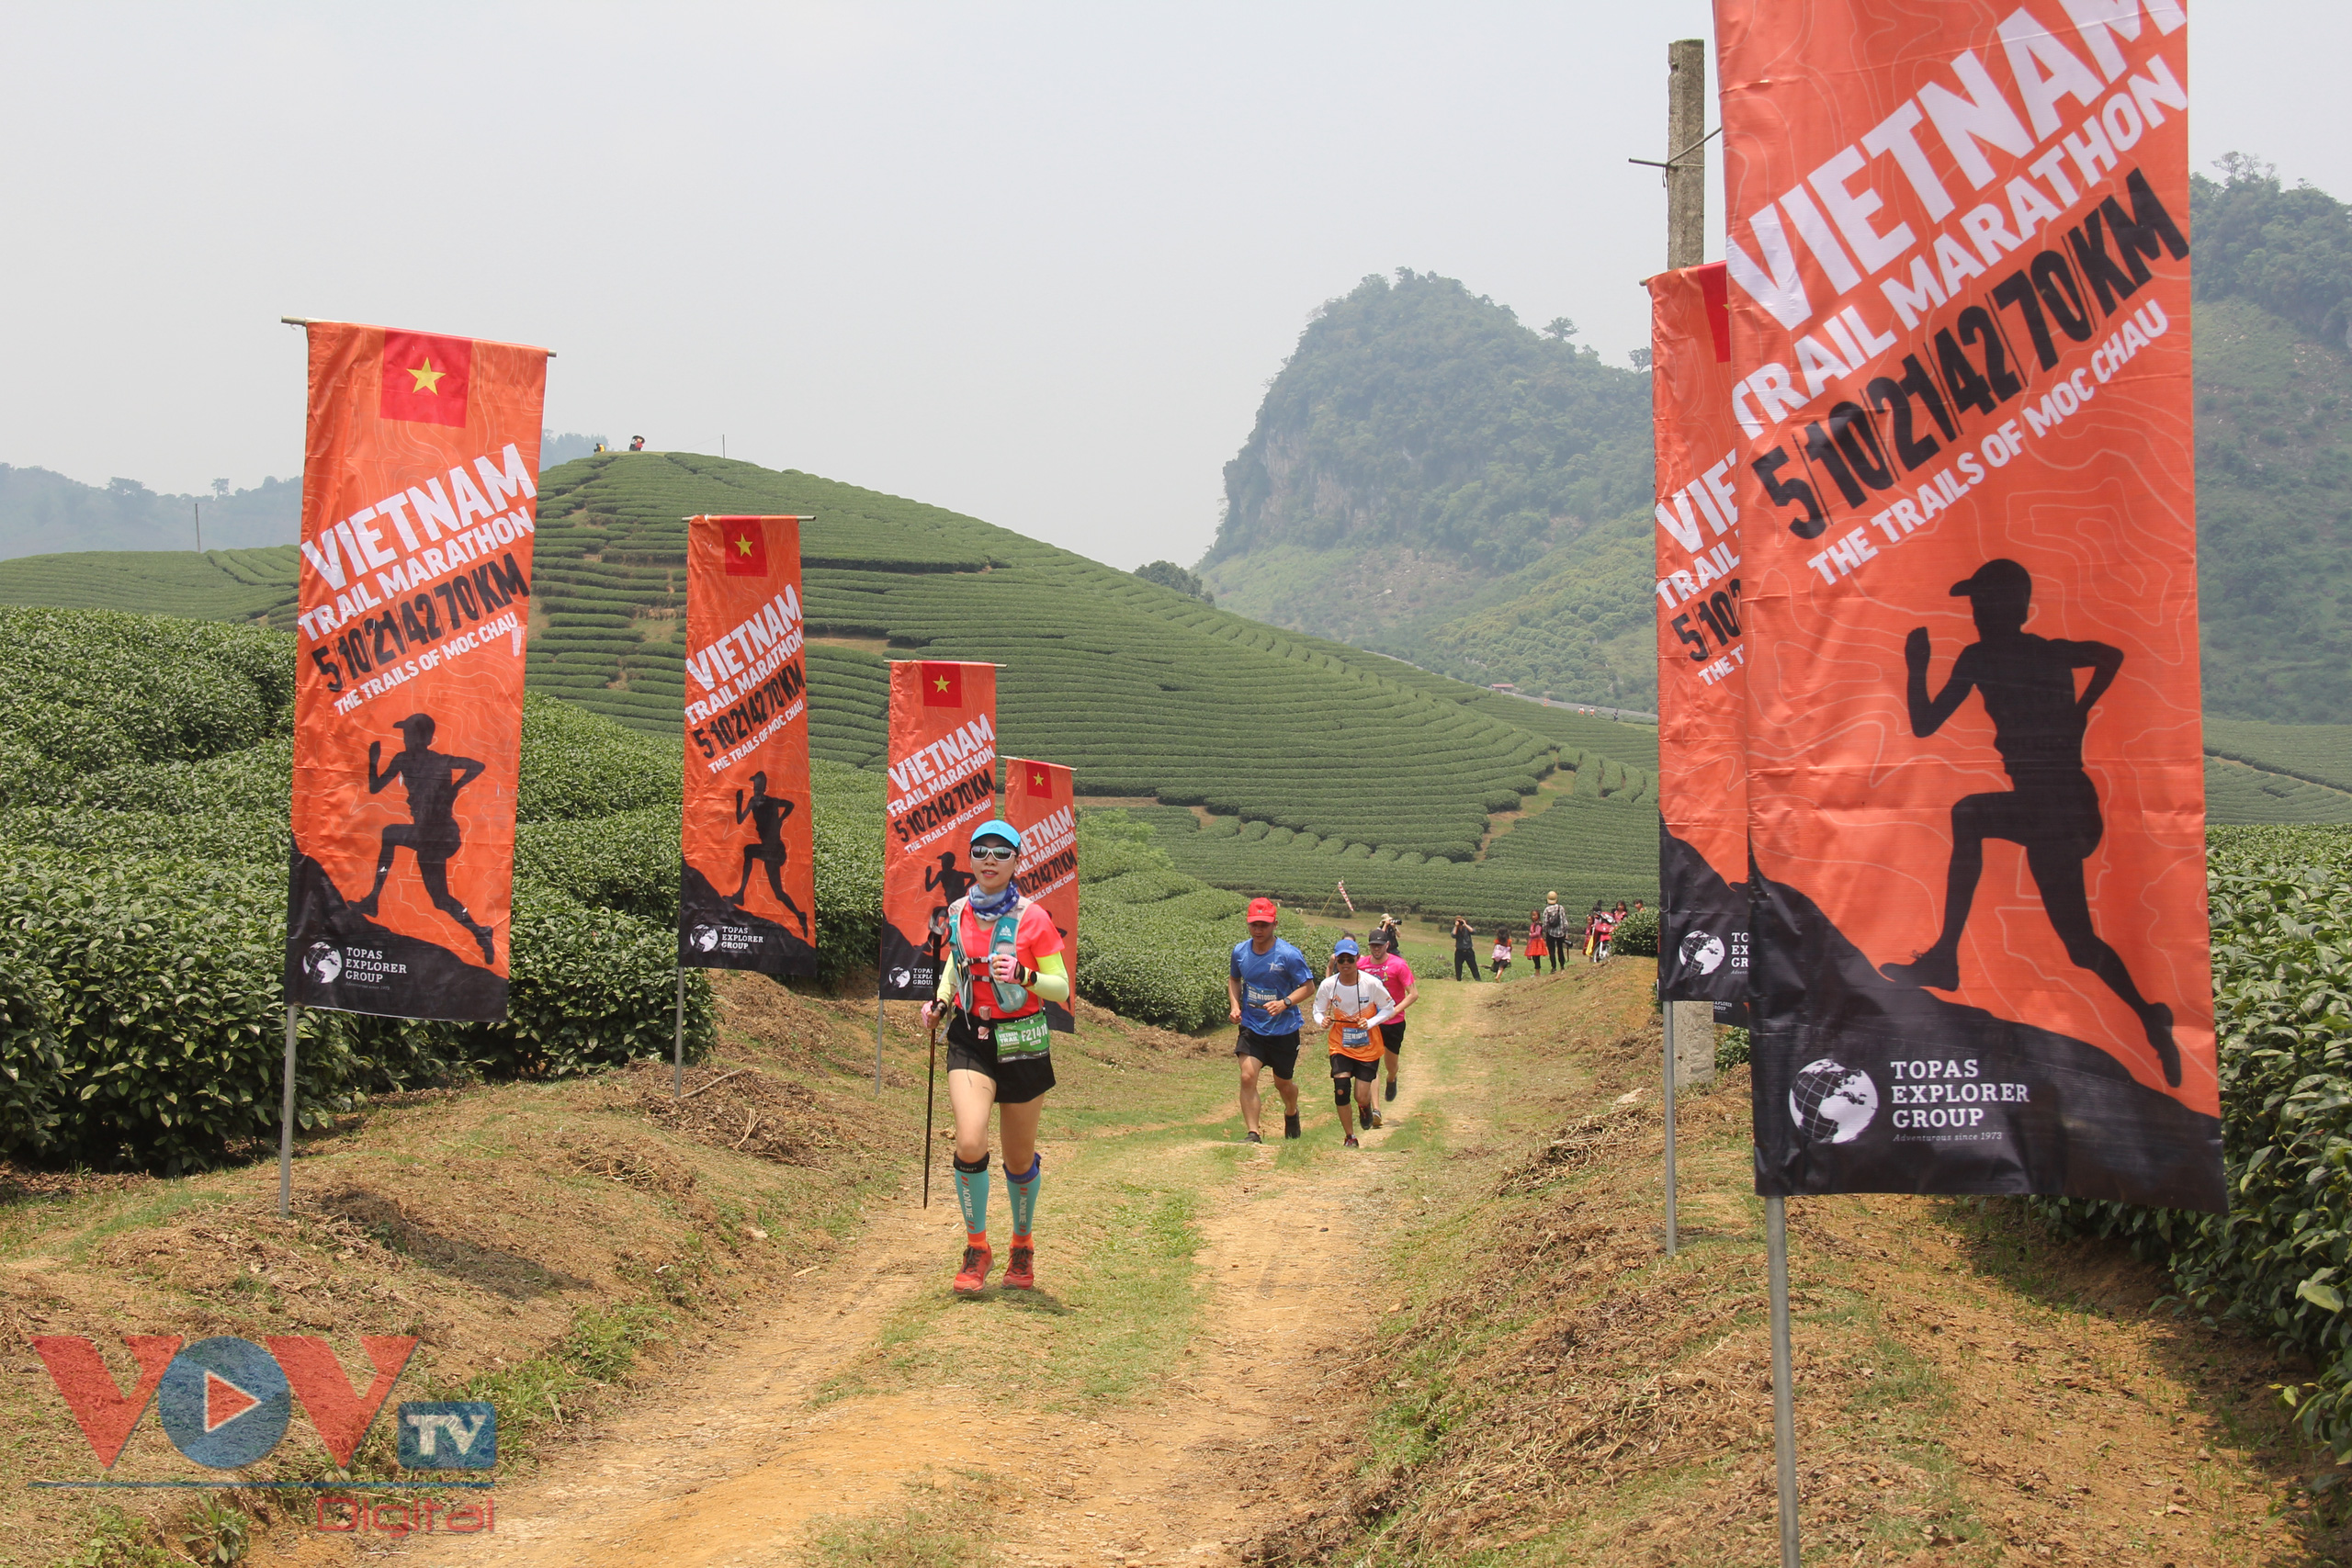 Đây là năm thứ 3 liên tiếp, Giải Marathon quốc tế đường mòn Việt Nam được tổ chức tại Mộc Châu. Tại giải này, các vận động viên sẽ cùng chạy trên nhiều địa hình khác nhau